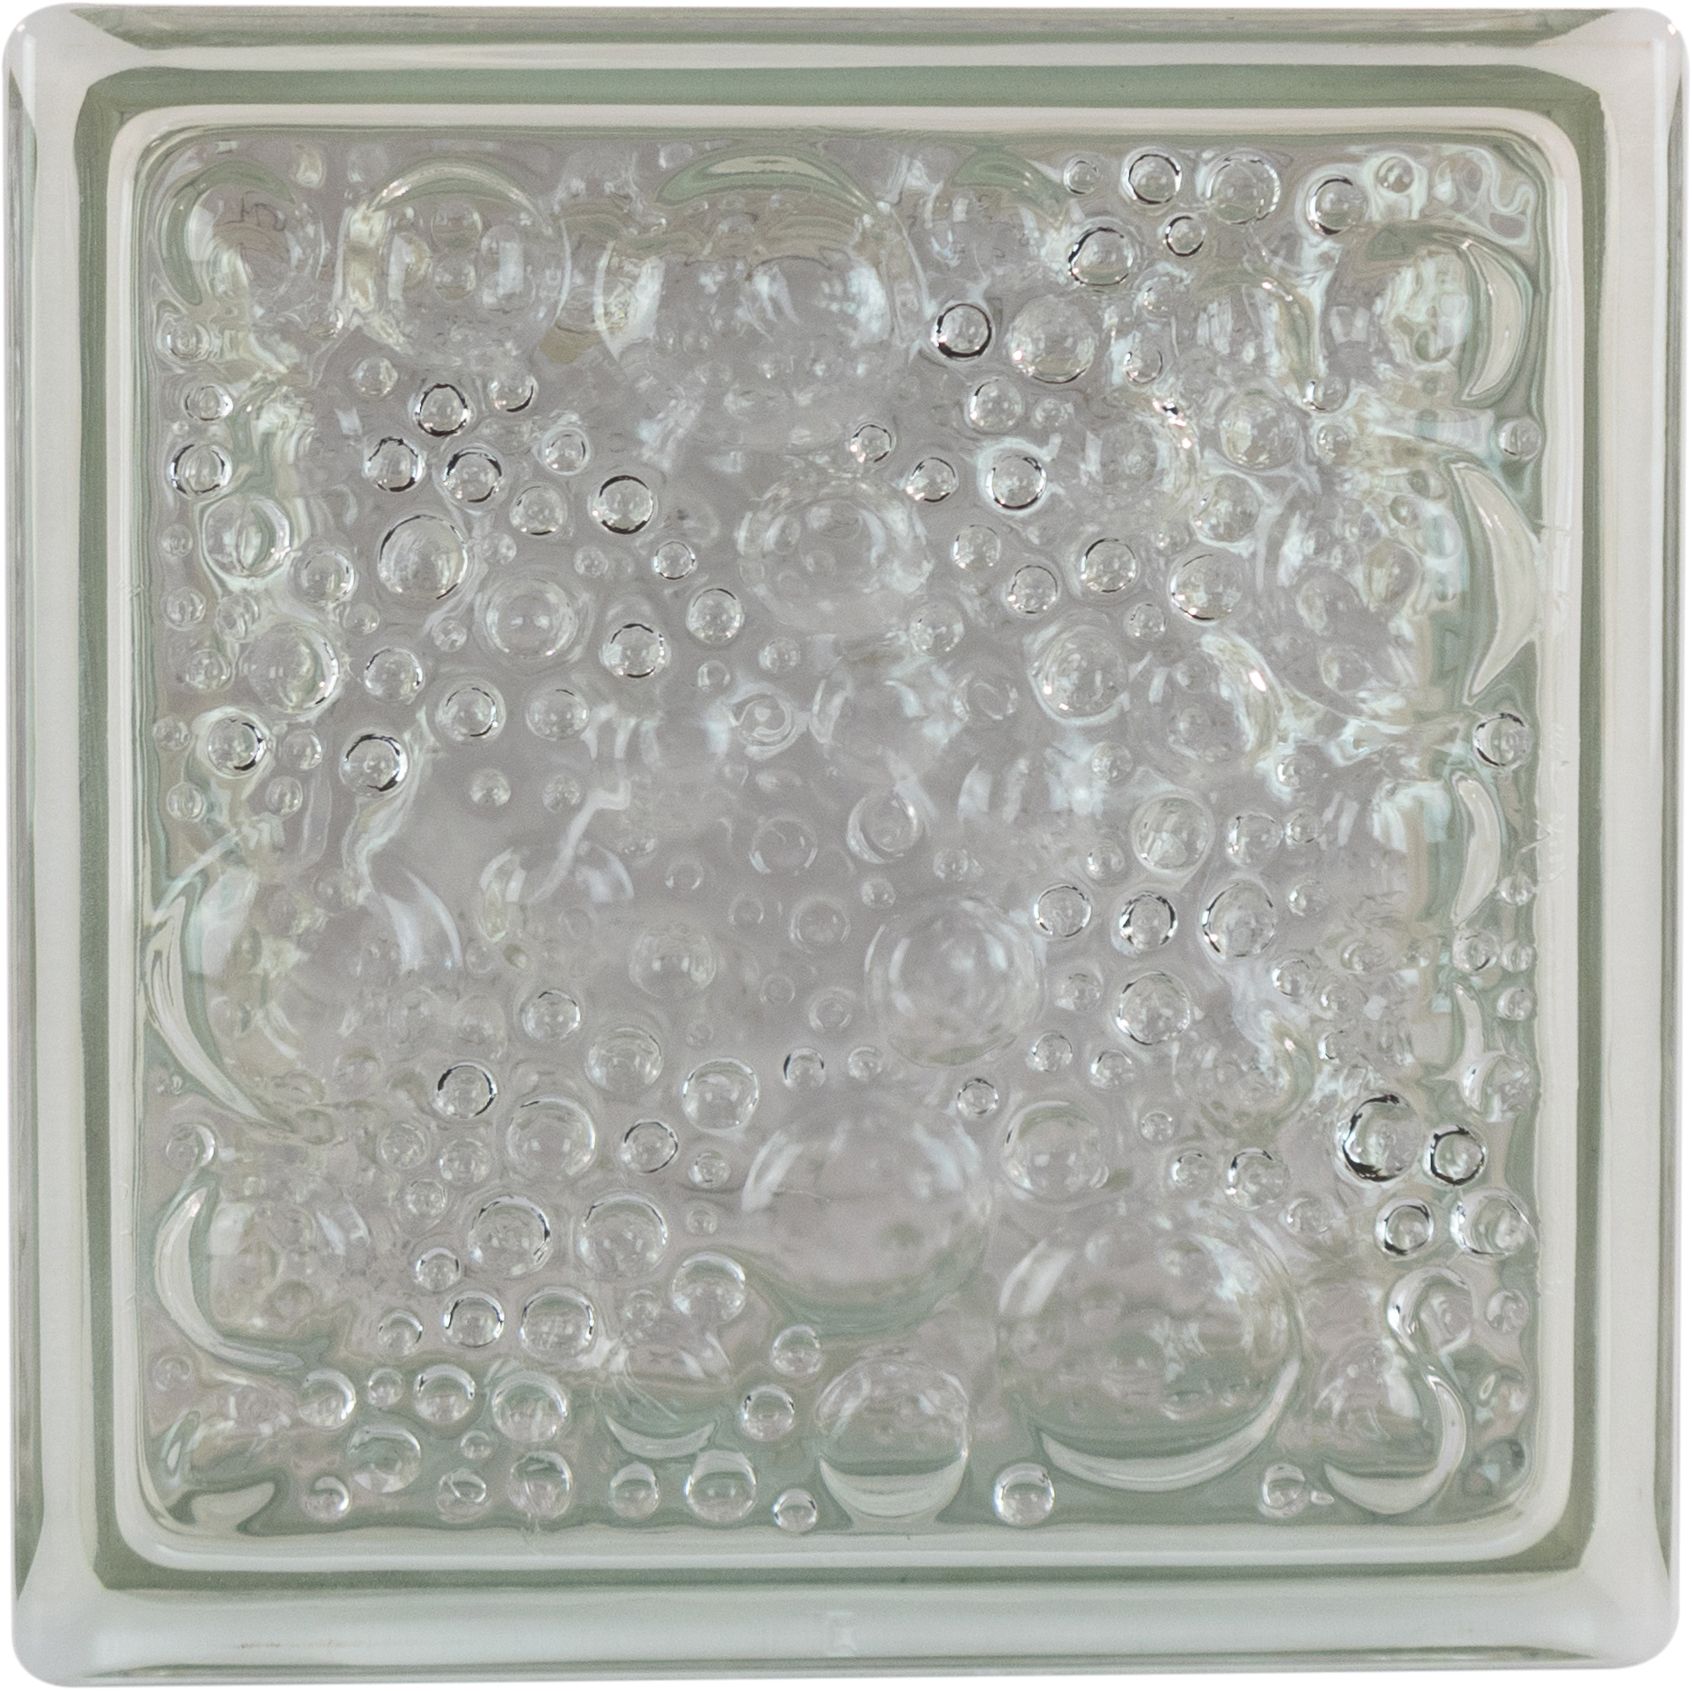 THERMO BLOCK Glasbaustein Savona klar, 19 x 19 x 12 cm, Wärmedämmung: Ug 1,2